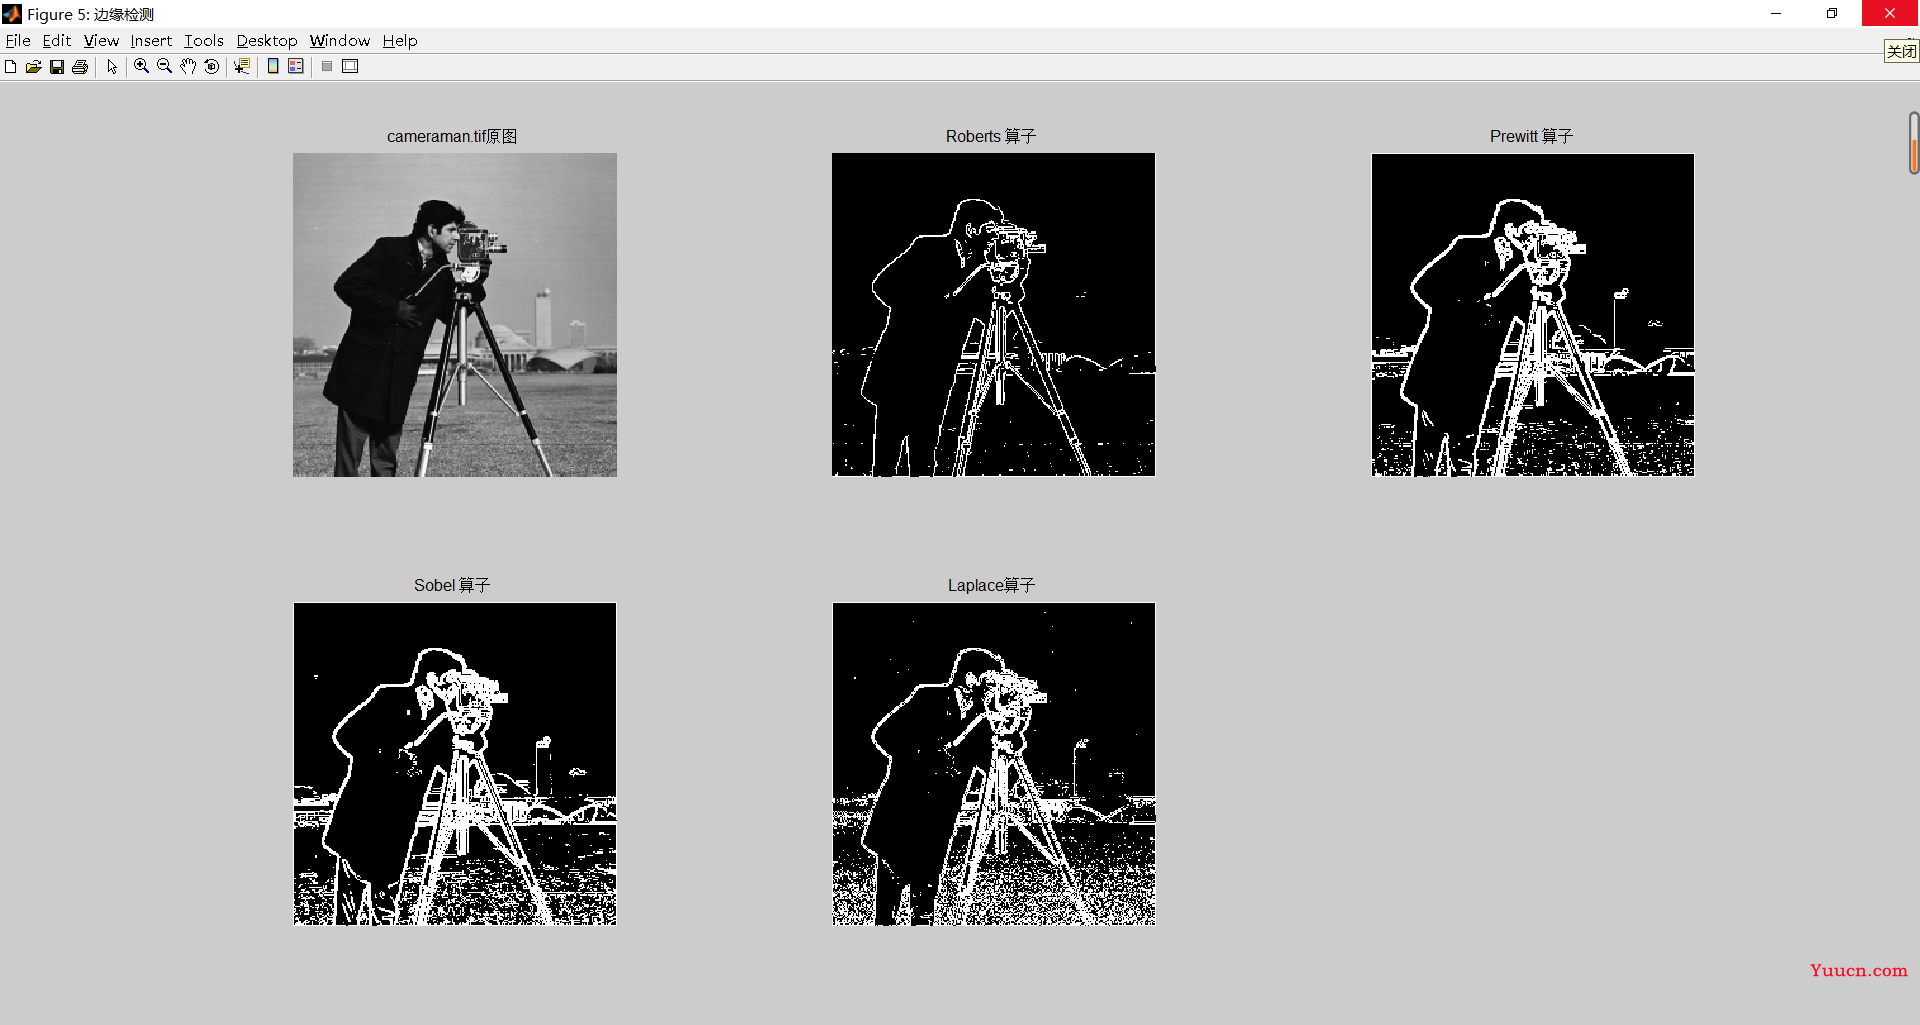 利用Matlab进行图像分割和边缘检测